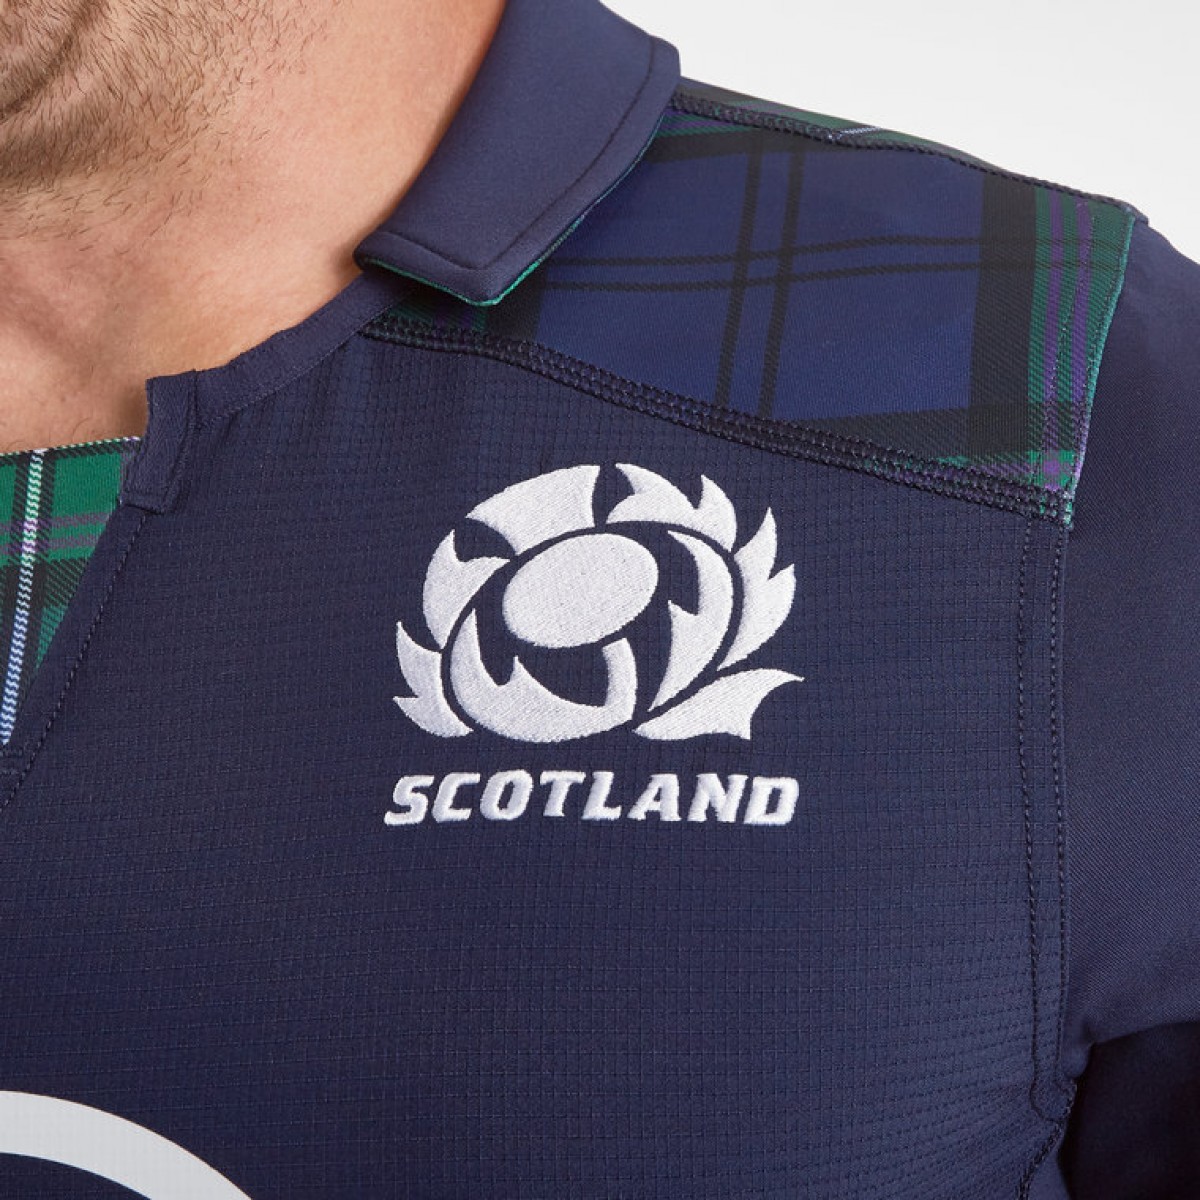 MACRON HOMME Scotland 2019/20 joueurs de Voyage Rugby Polo Shirt 